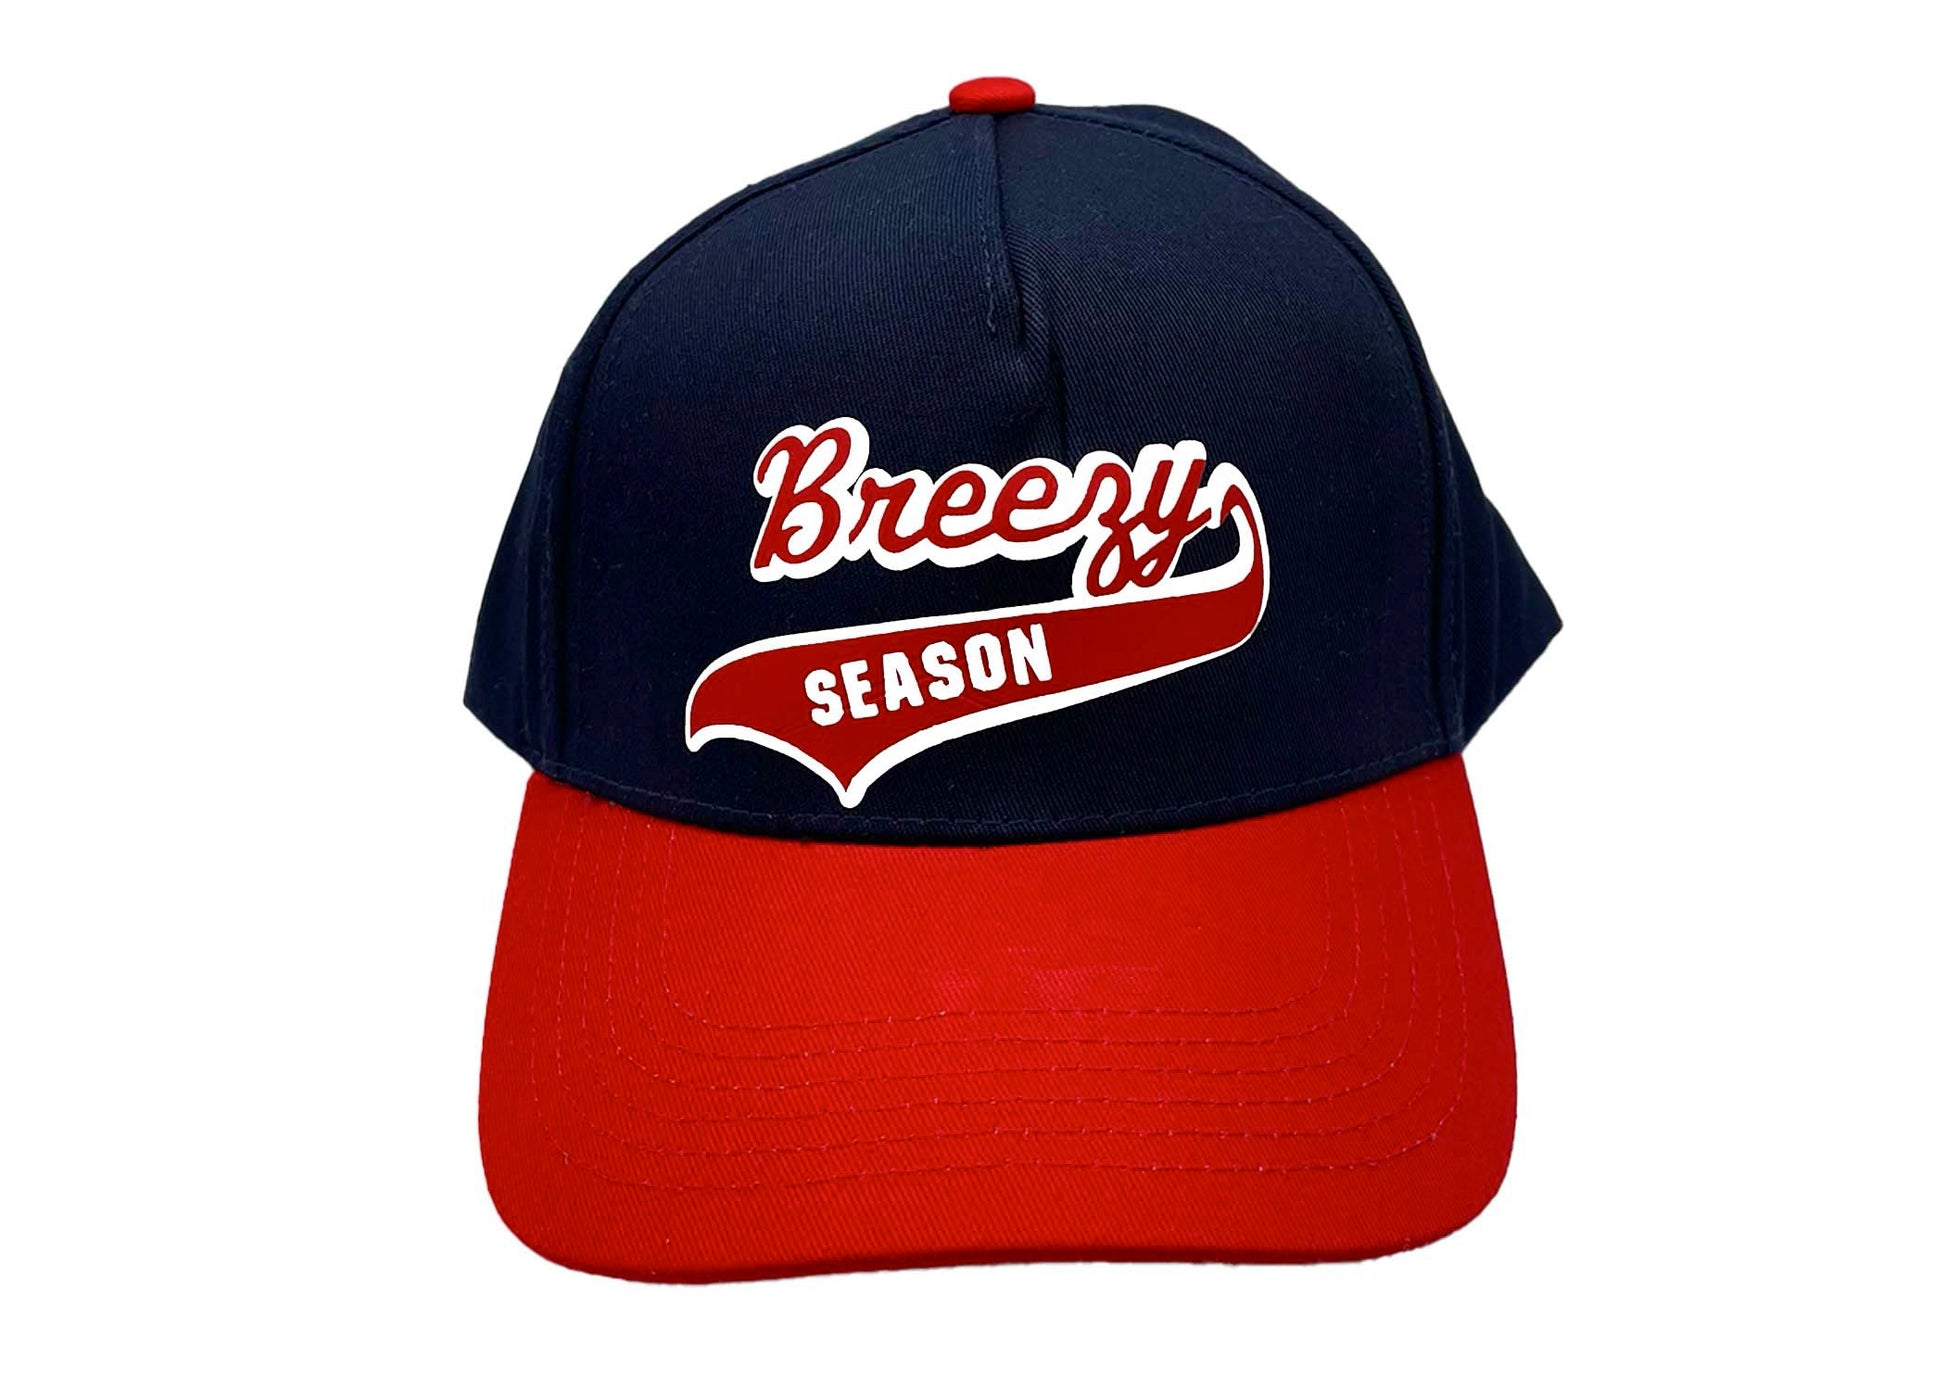 Navy/Red Trucker Hat - Breezy Season 